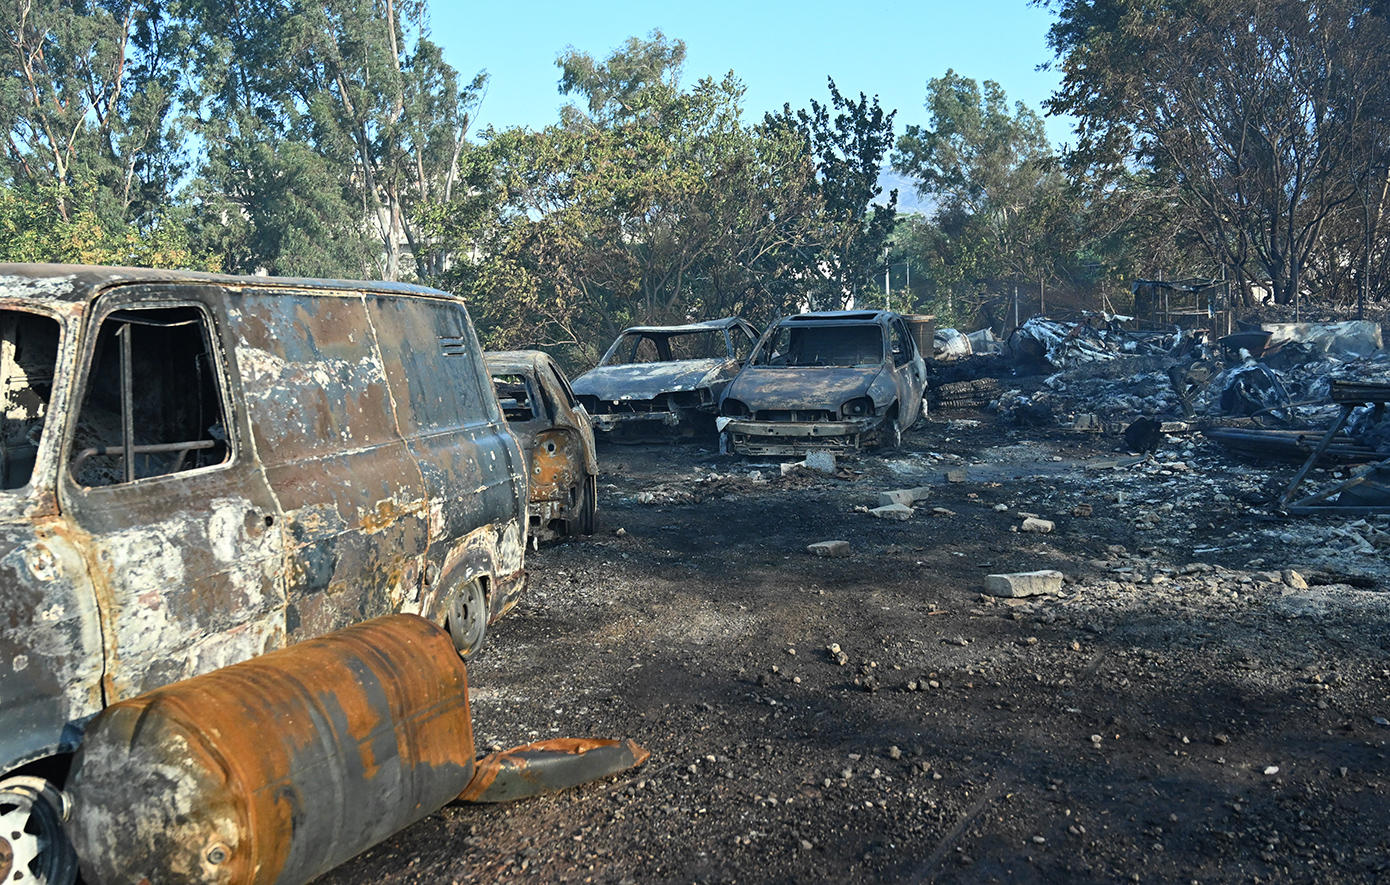 Εικόνες μεγάλης καταστροφής στα εργοστάσια που παραδόθηκαν στις φλόγες στις Αχαρνές &#8211; Πώς ξεκίνησε η φωτιά